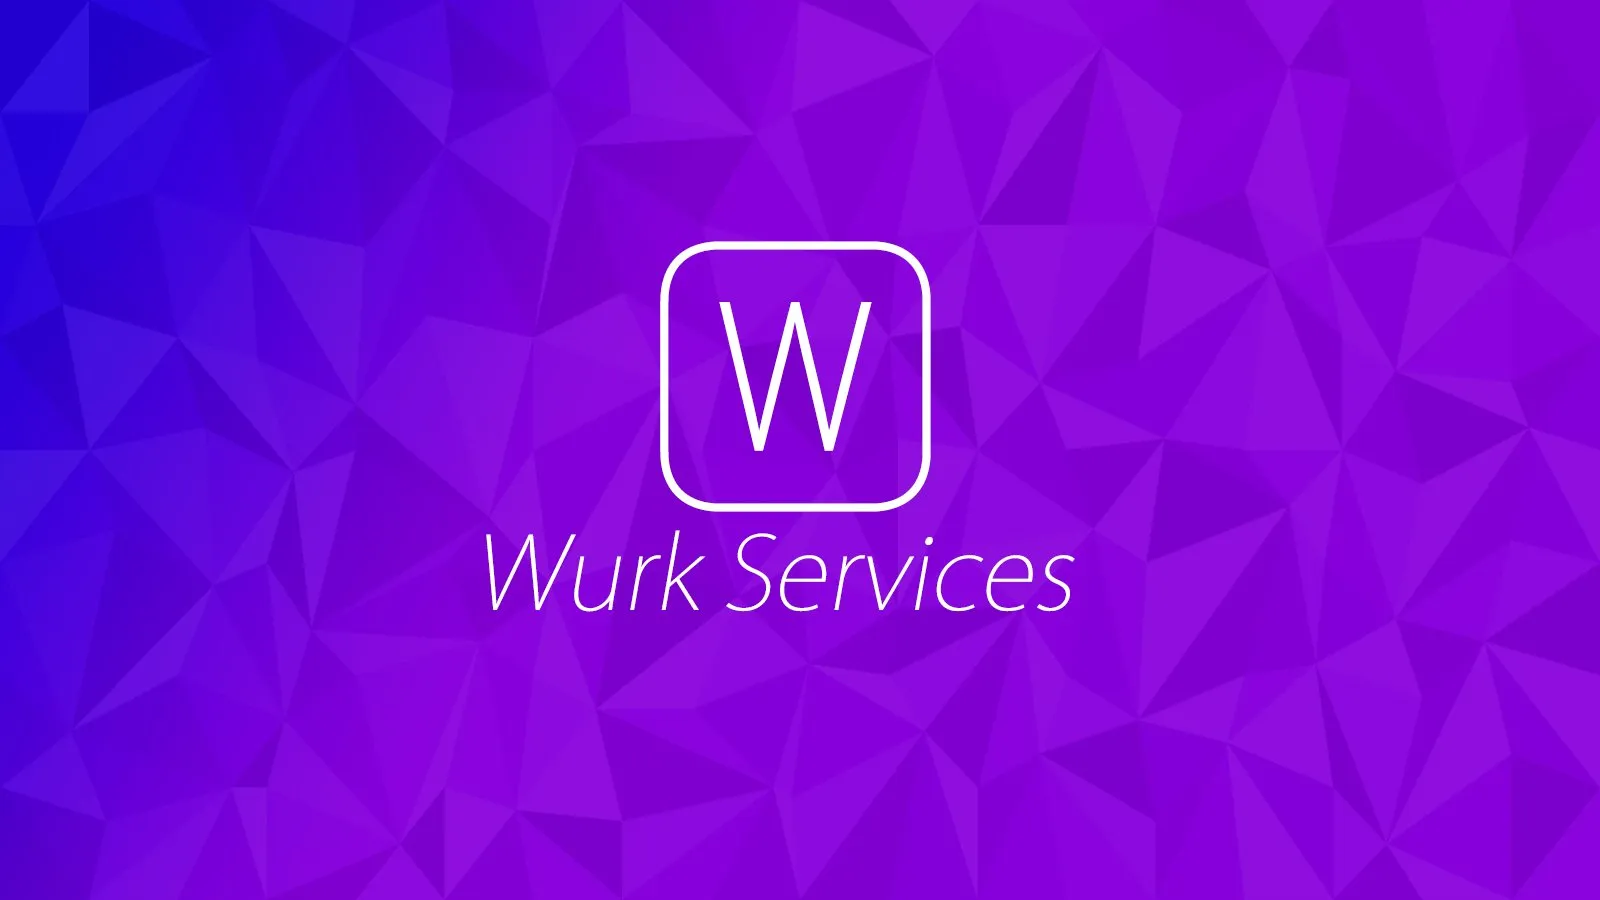 Wurk Services